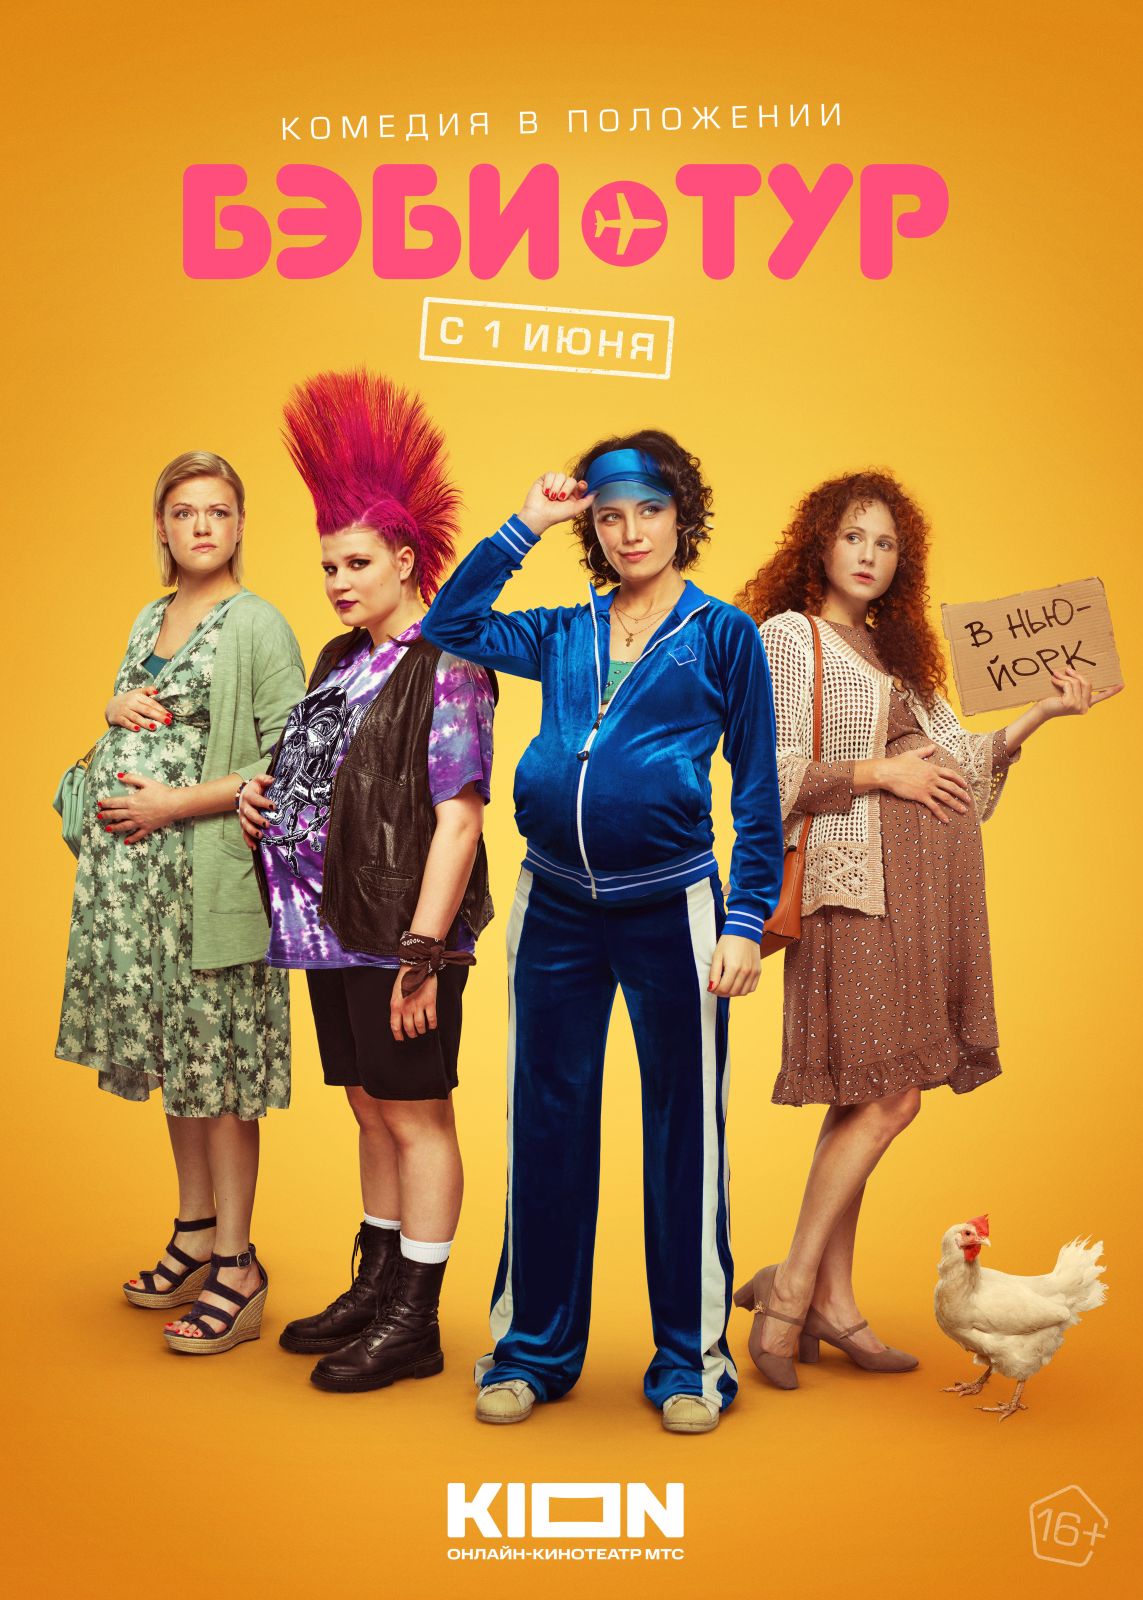 Анастасия Попова, Анна Котова, Лина Миримская и Мария Осипова отправились в «Бэби-тур» в трейлере новой комедии